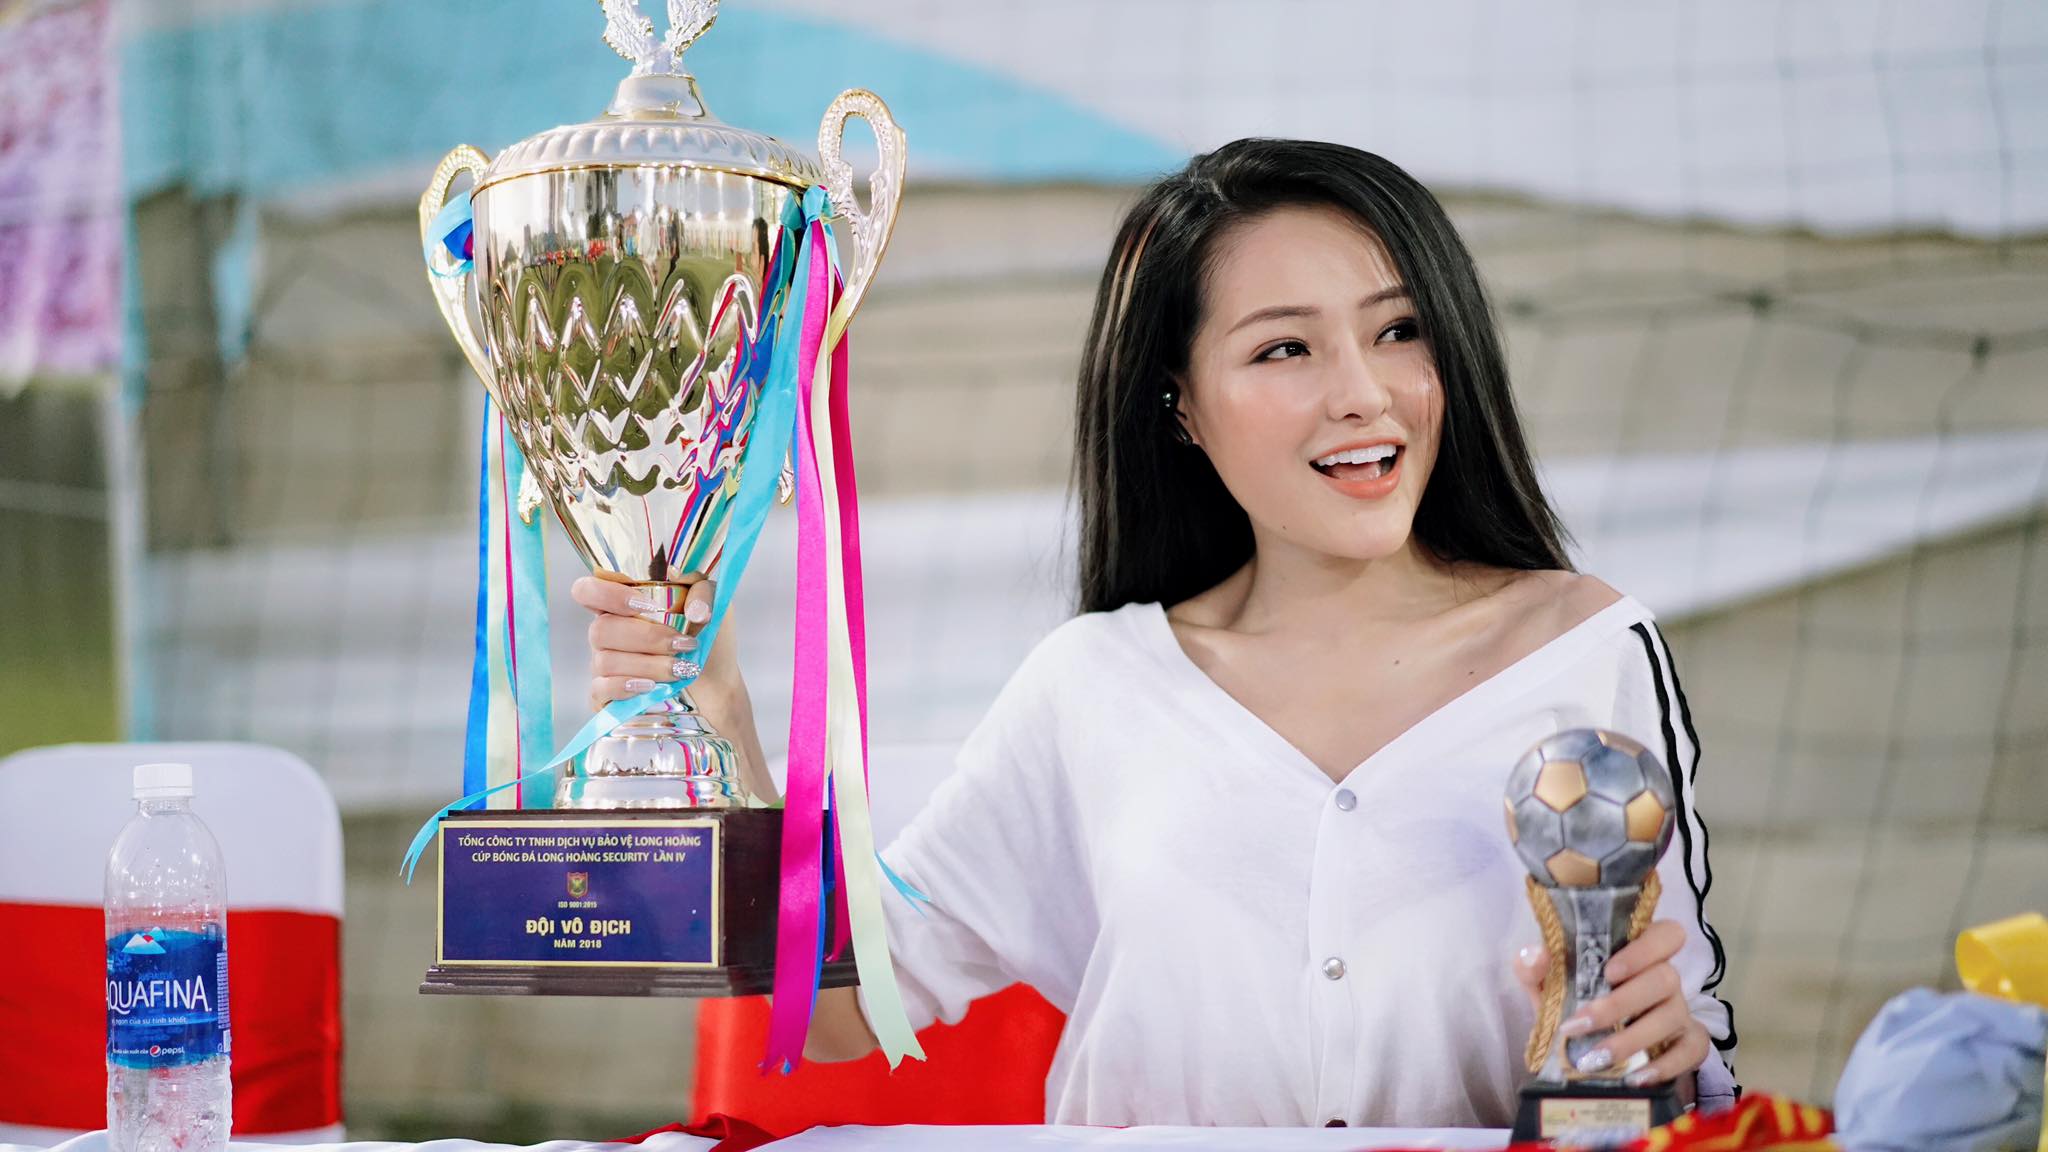 Ngân 98 bán nude ăn mừng ĐT Việt Nam vô địch AFF Suzuki Cup 2018